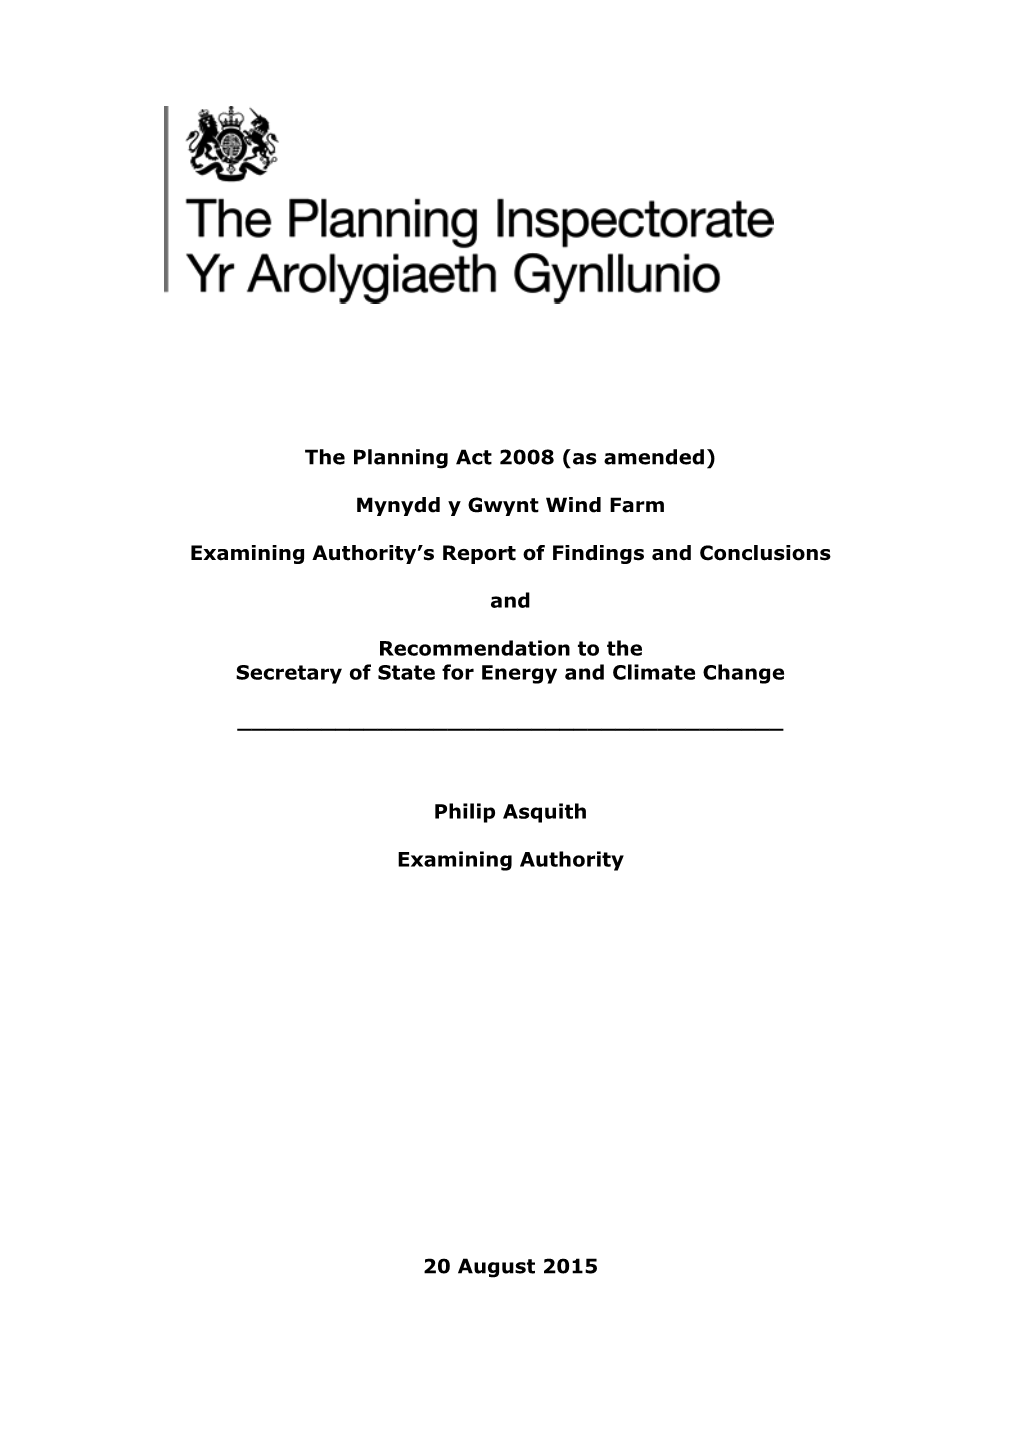 The Planning Act 2008 (As Amended) Mynydd Y Gwynt Wind Farm